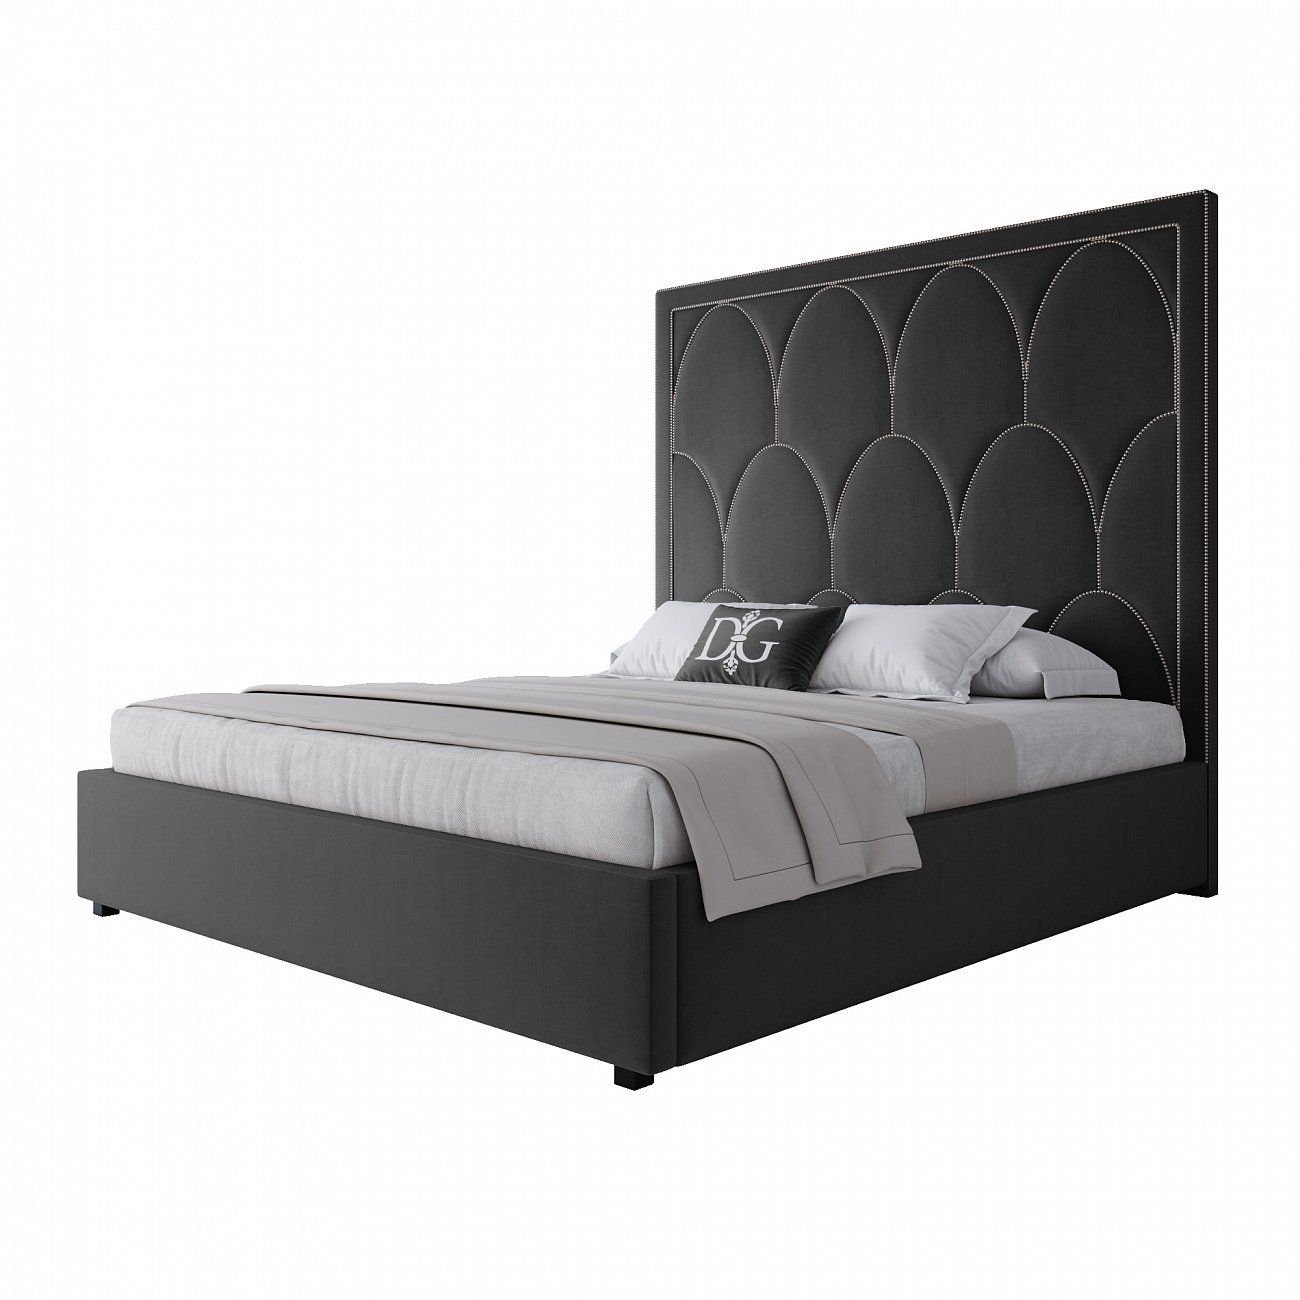 Double bed 180x200 black Petals Queen